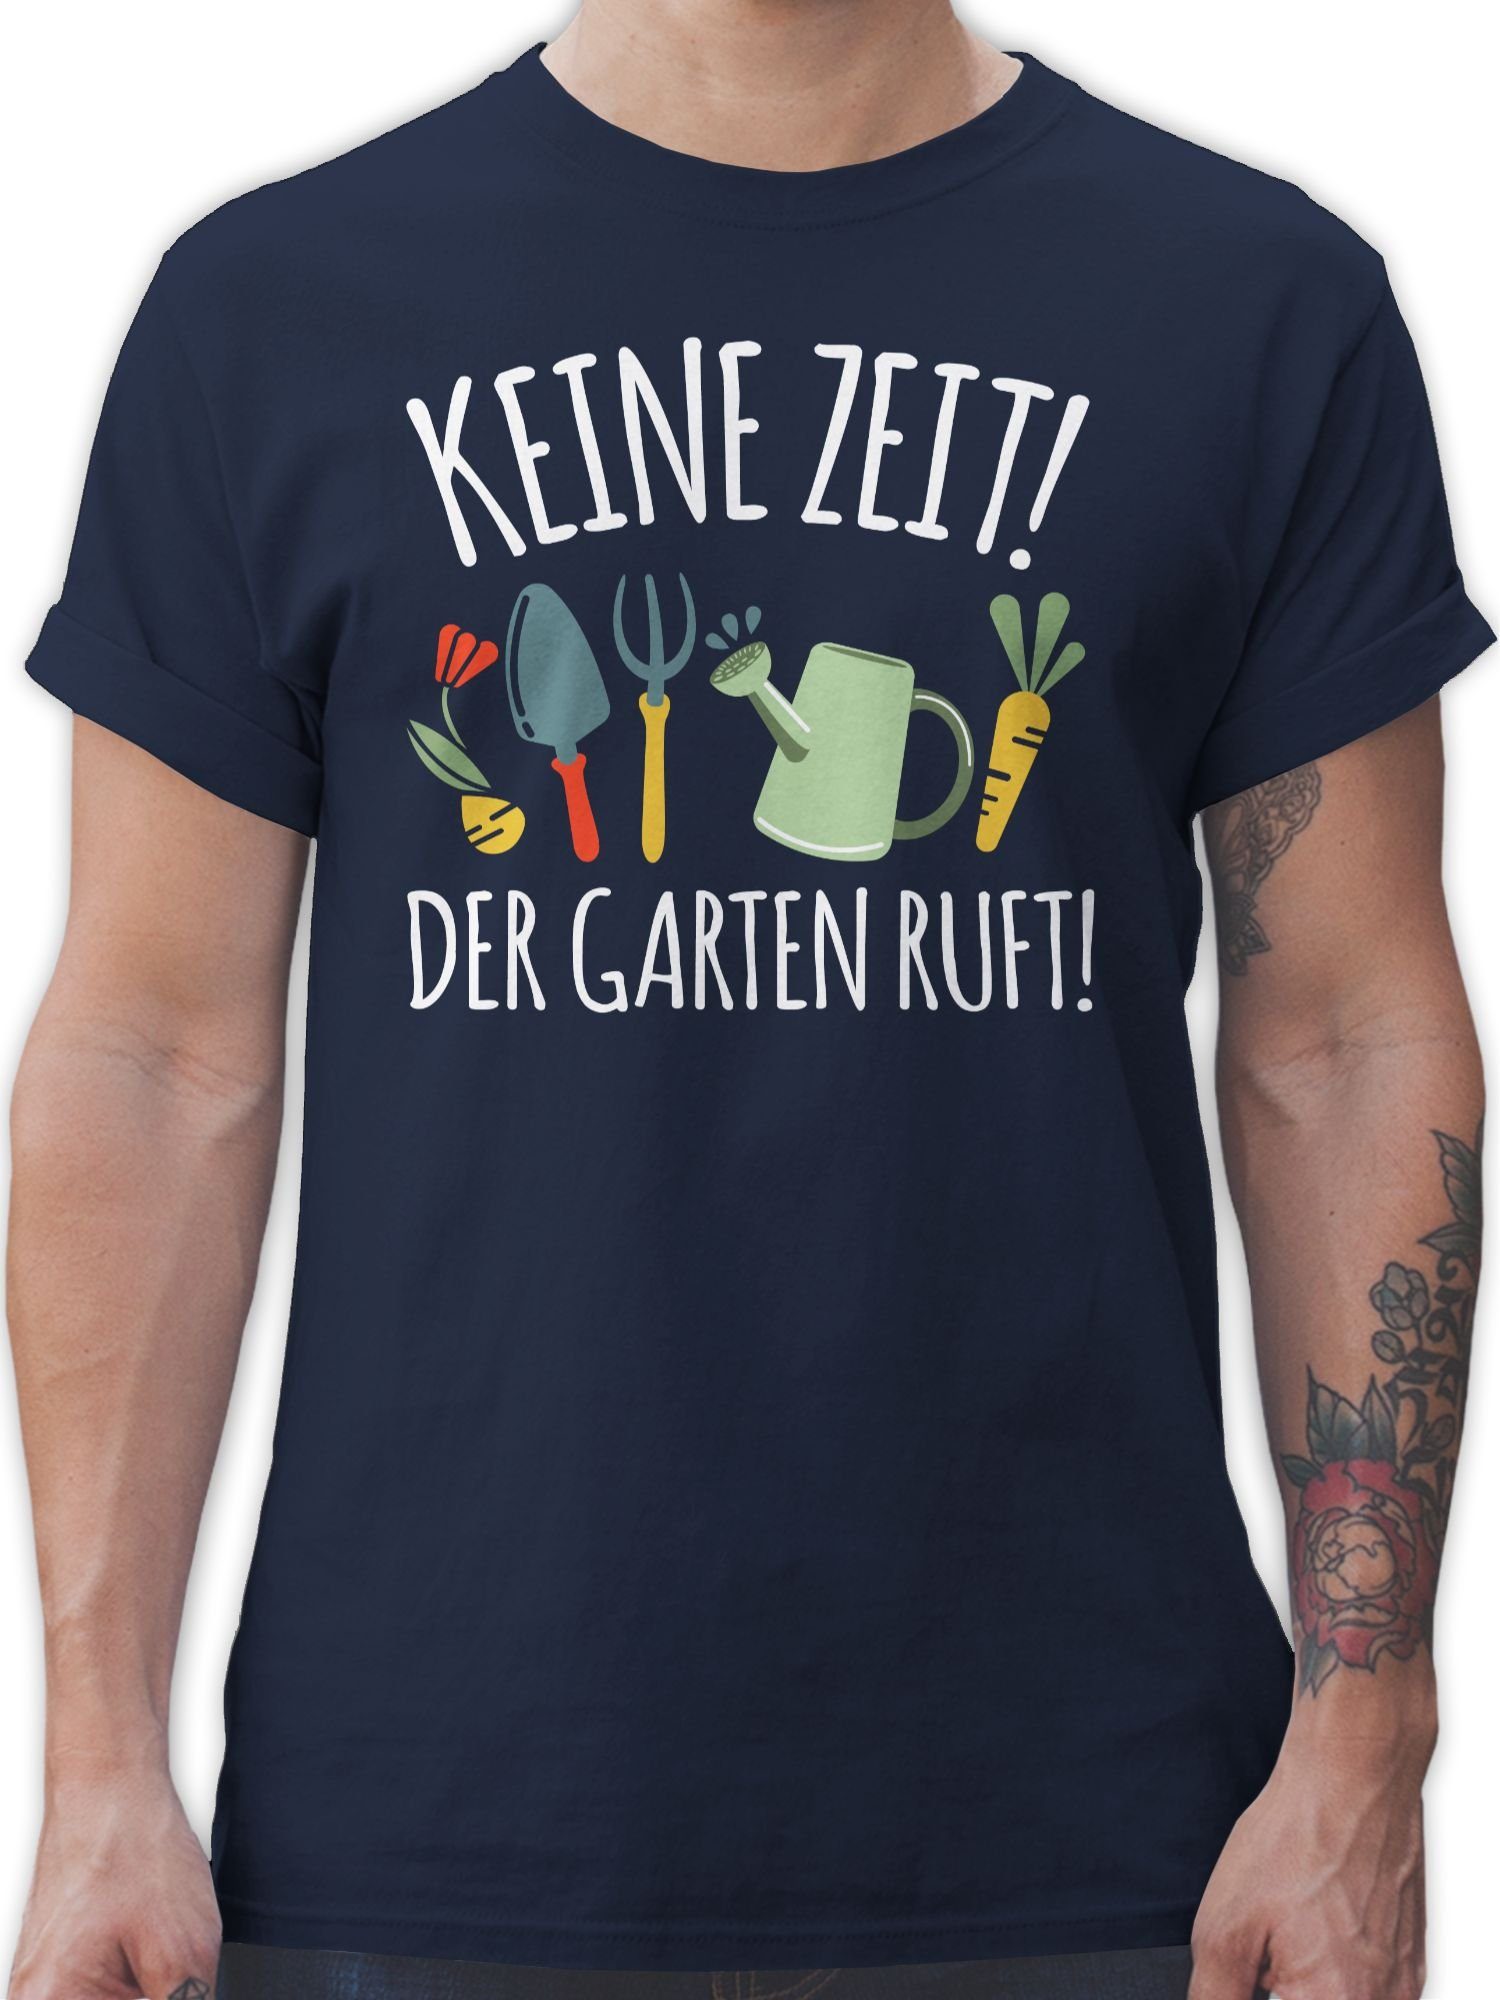 Shirtracer Hobby Outfit ruft - Garten T-Shirt Blau Keine Navy 2 Der weiß Zeit!